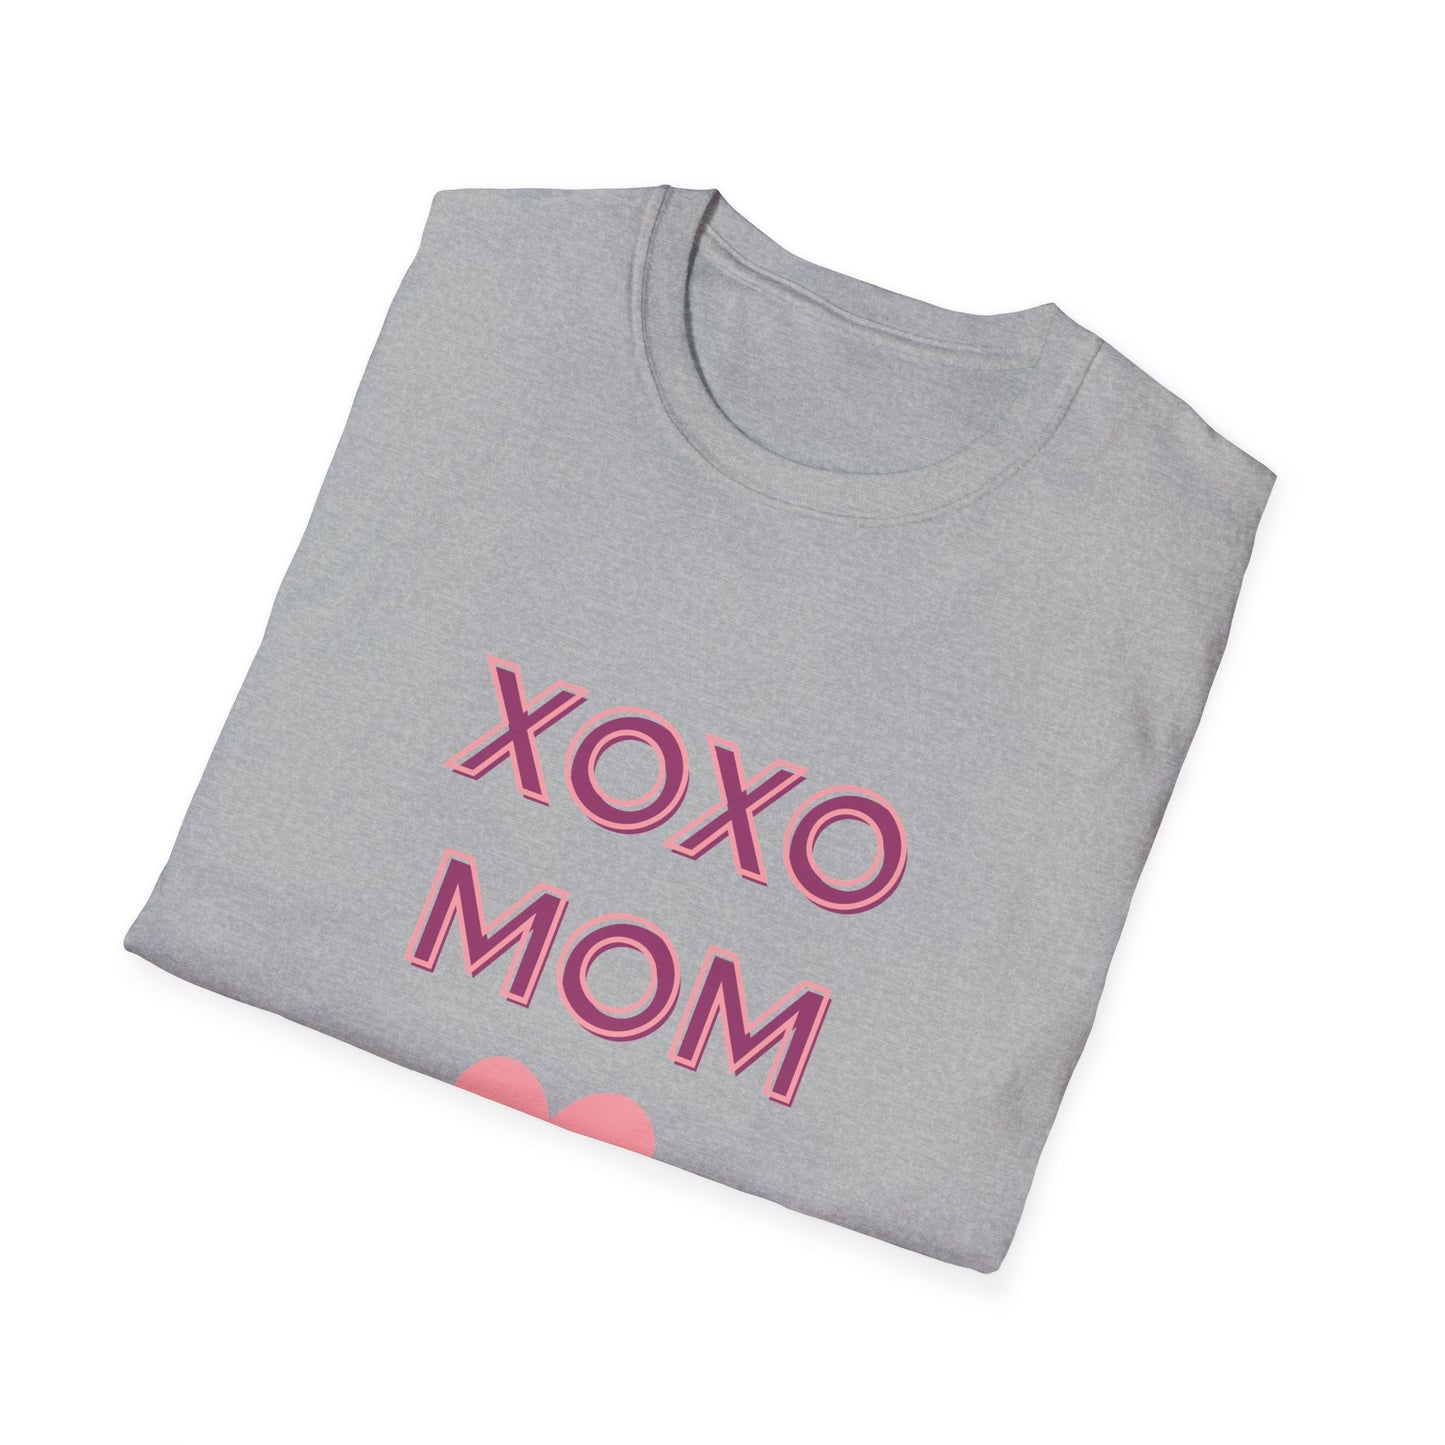 MOM XOXO -Unisex Softstyle T-Shirt